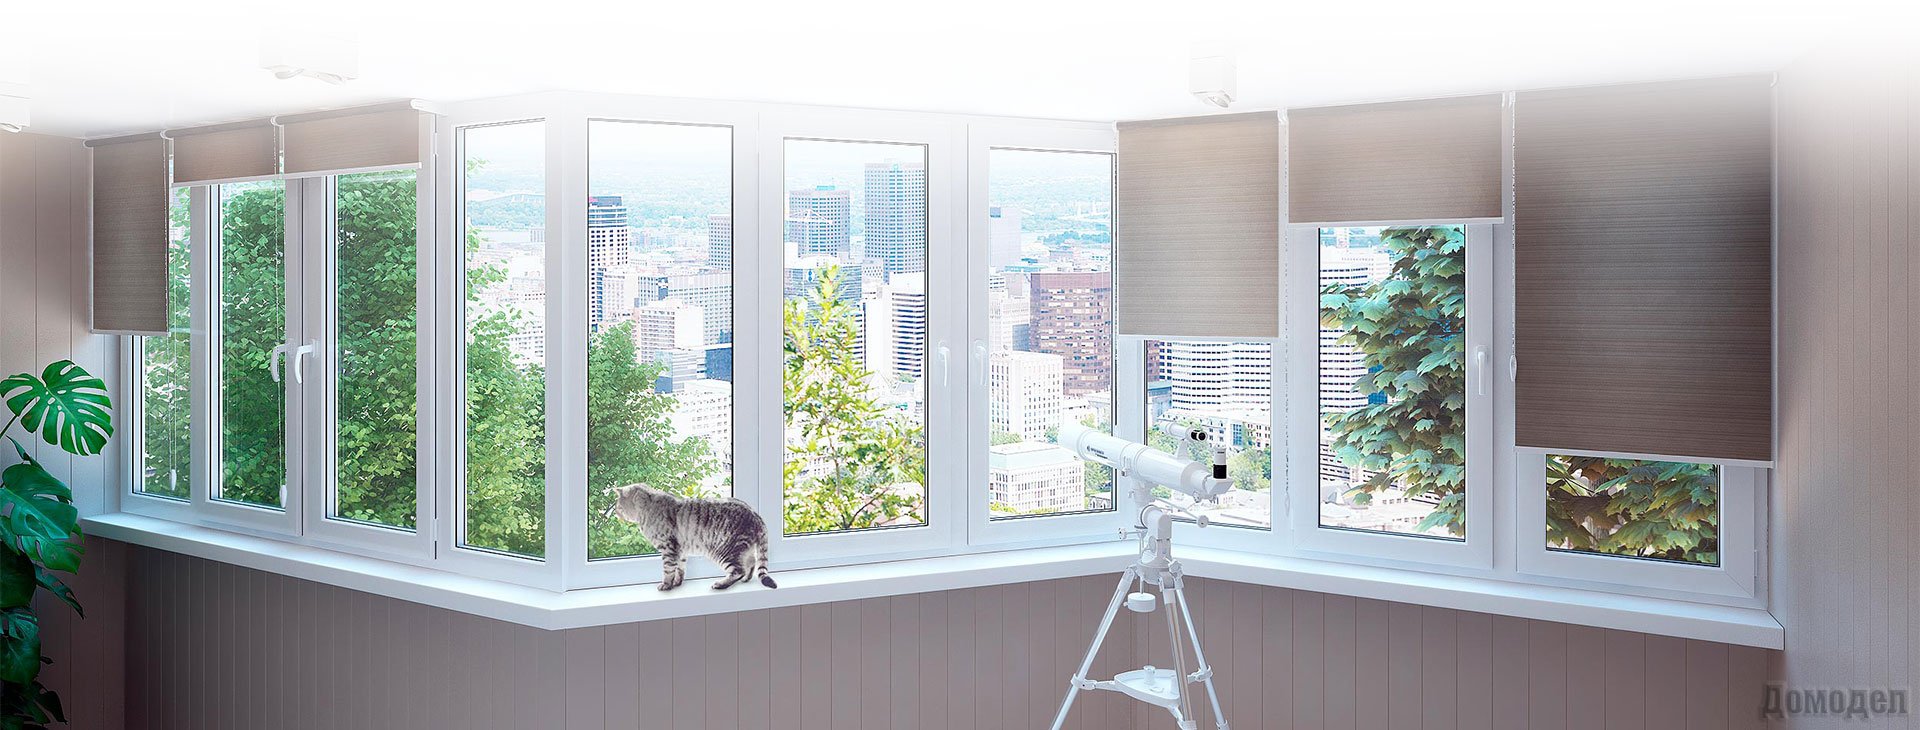 Виды пластиковых окон. Какие подходят для балконов лучше всего?